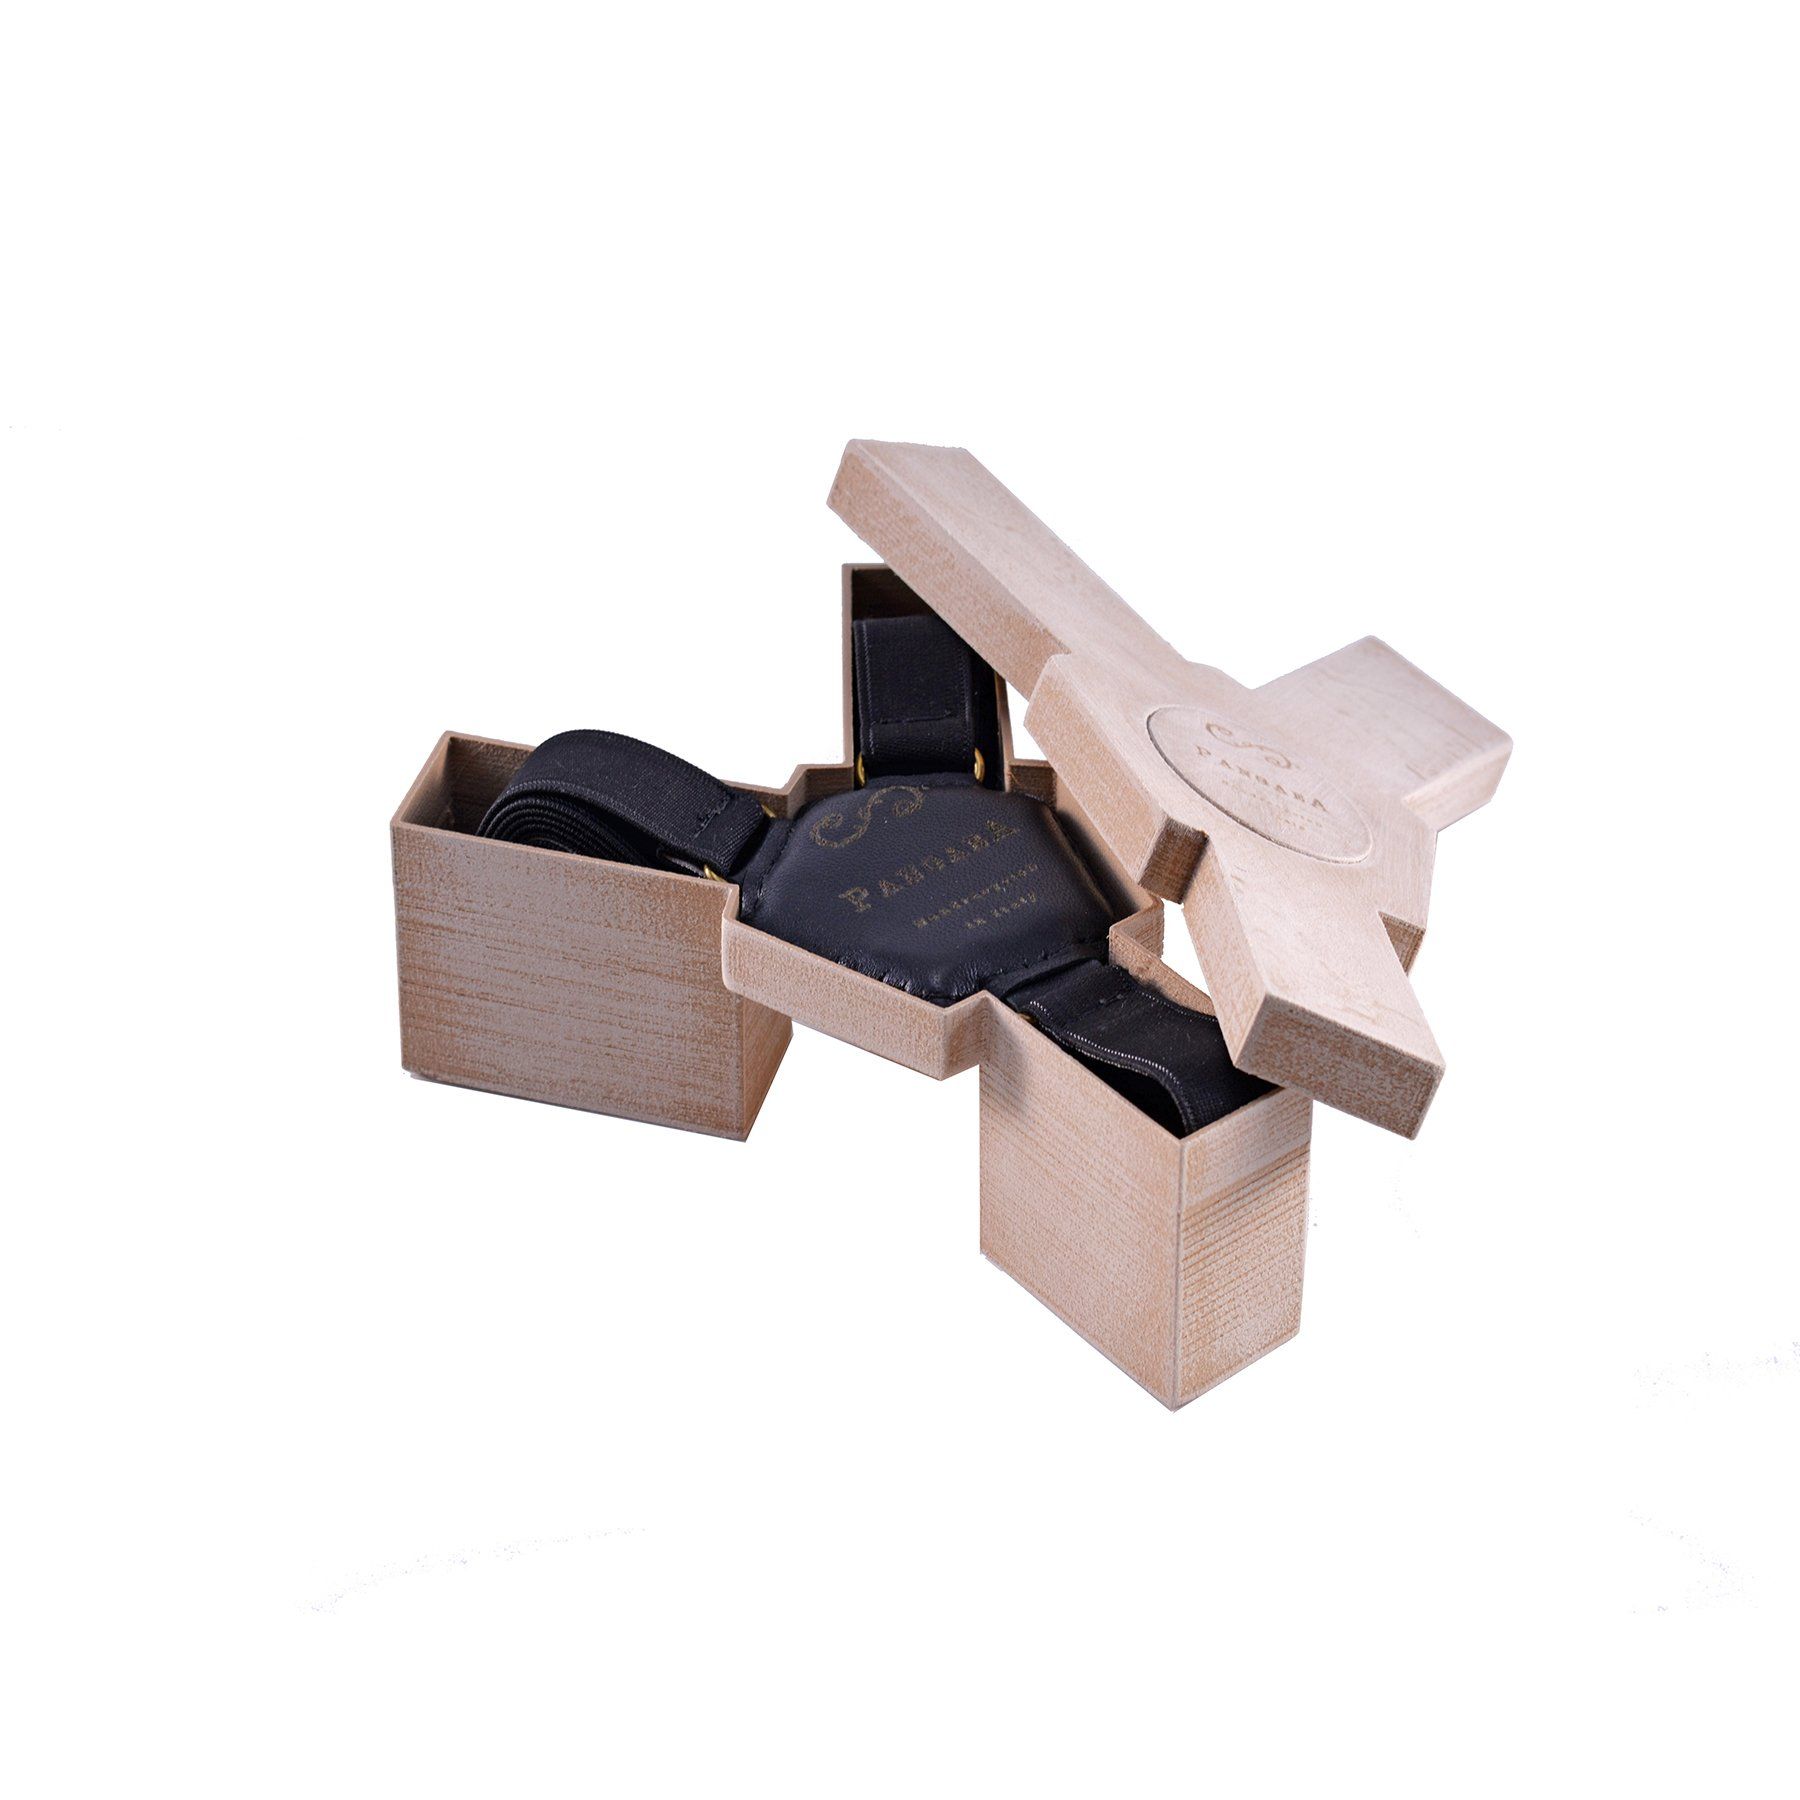 pangaea bretelle tiracche in pelle nera materiale riciclato scatola pla legno